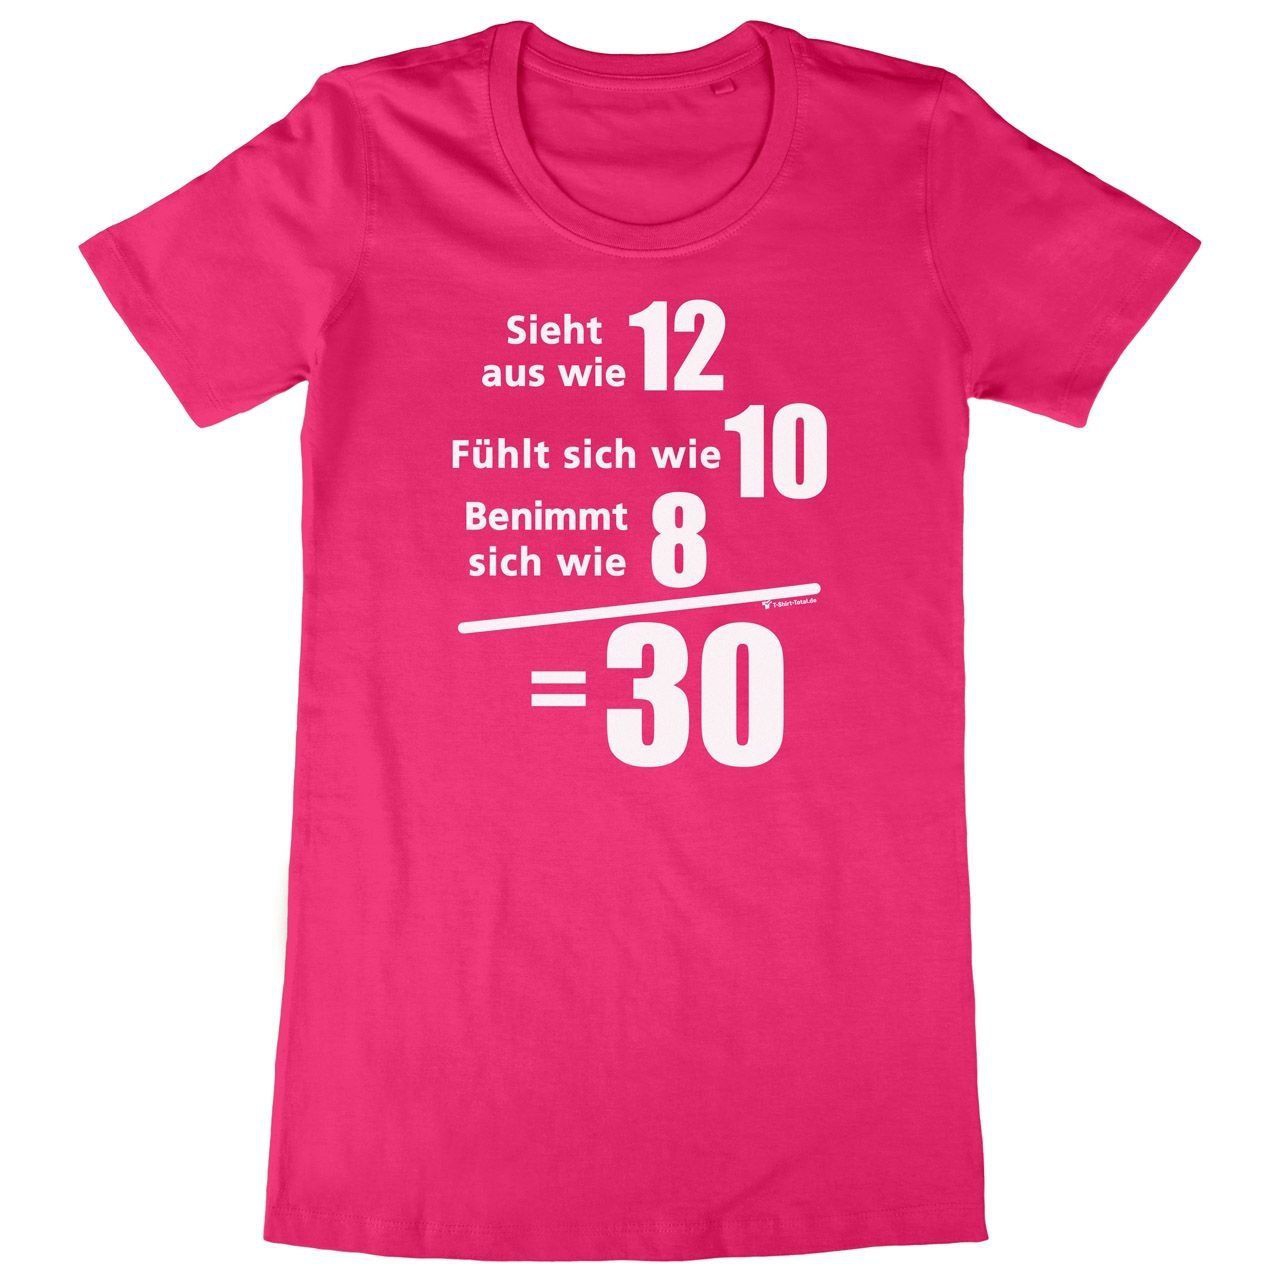 Sieht aus wie 12 Woman Long Shirt pink Small